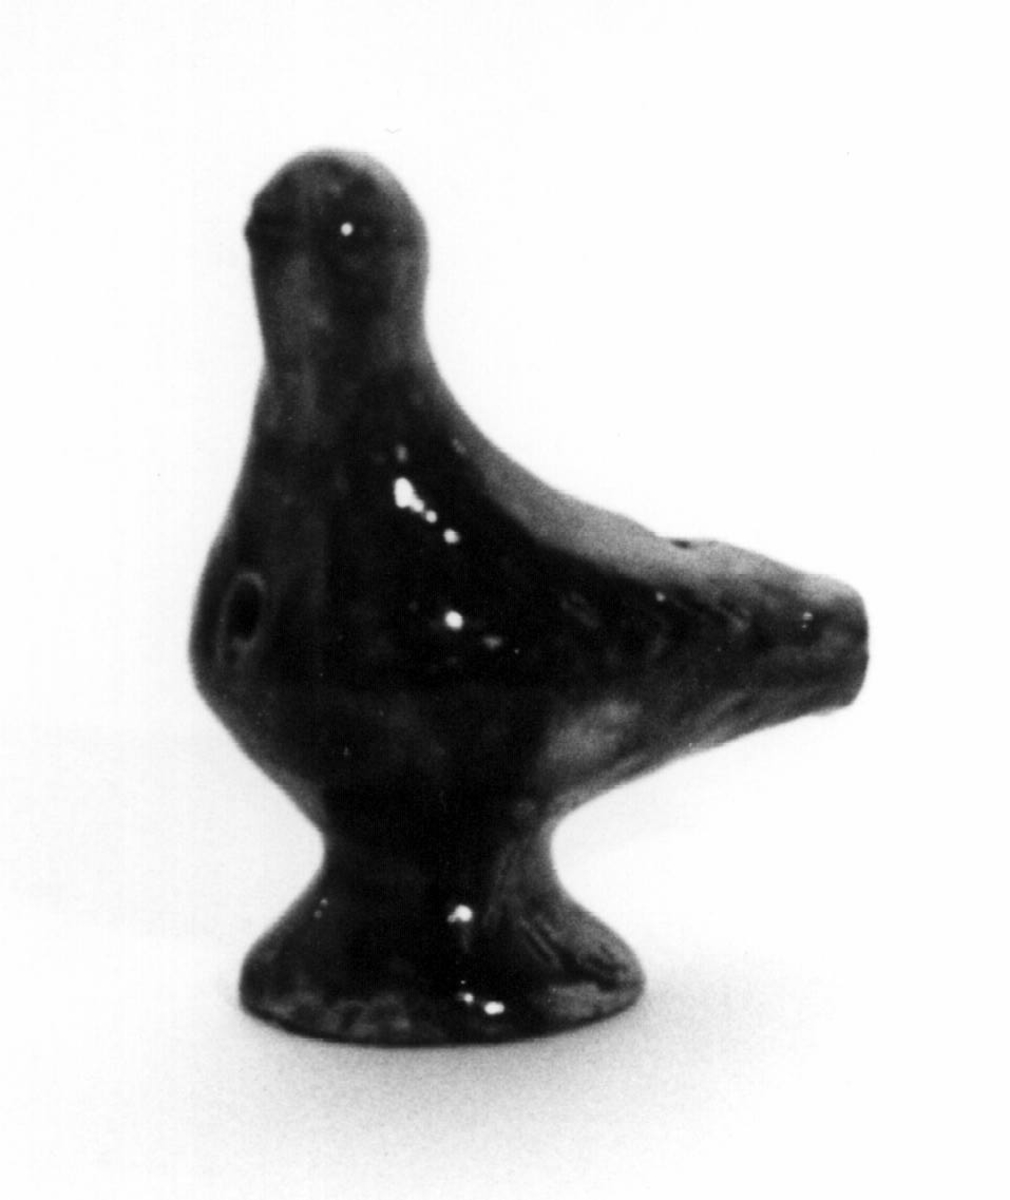 Spaltefløyte i keramikk i form av en fugl, utvendig med brun glasur.
Spalte og labium i stjerten, ett fingerhull i brystet.

